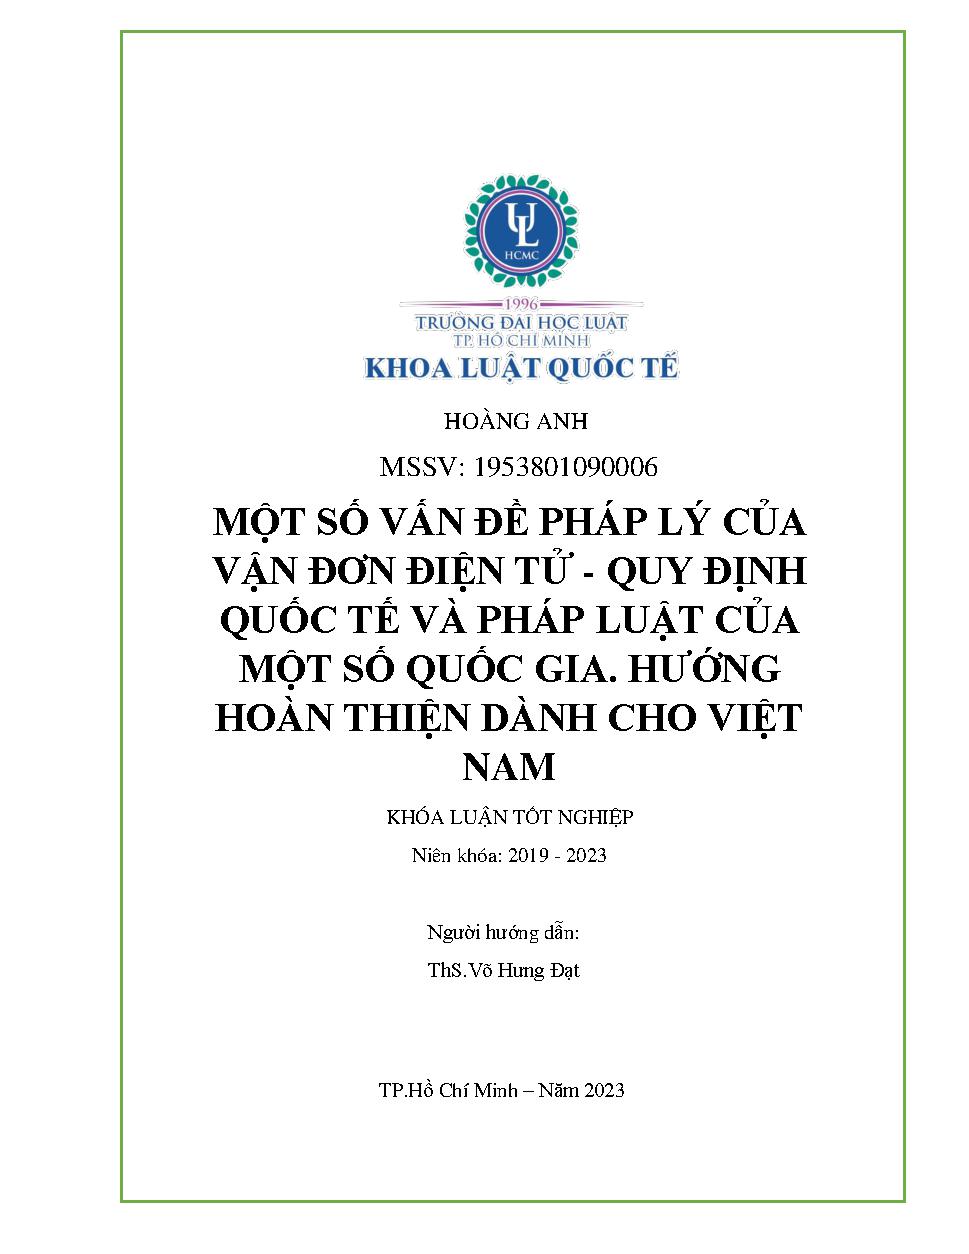 Một số vấn đề pháp lý của vận đơn điện tử - Quy định quốc tế và pháp luật của một số quốc gia. Hướng hoàn thiện dành cho Việt Nam